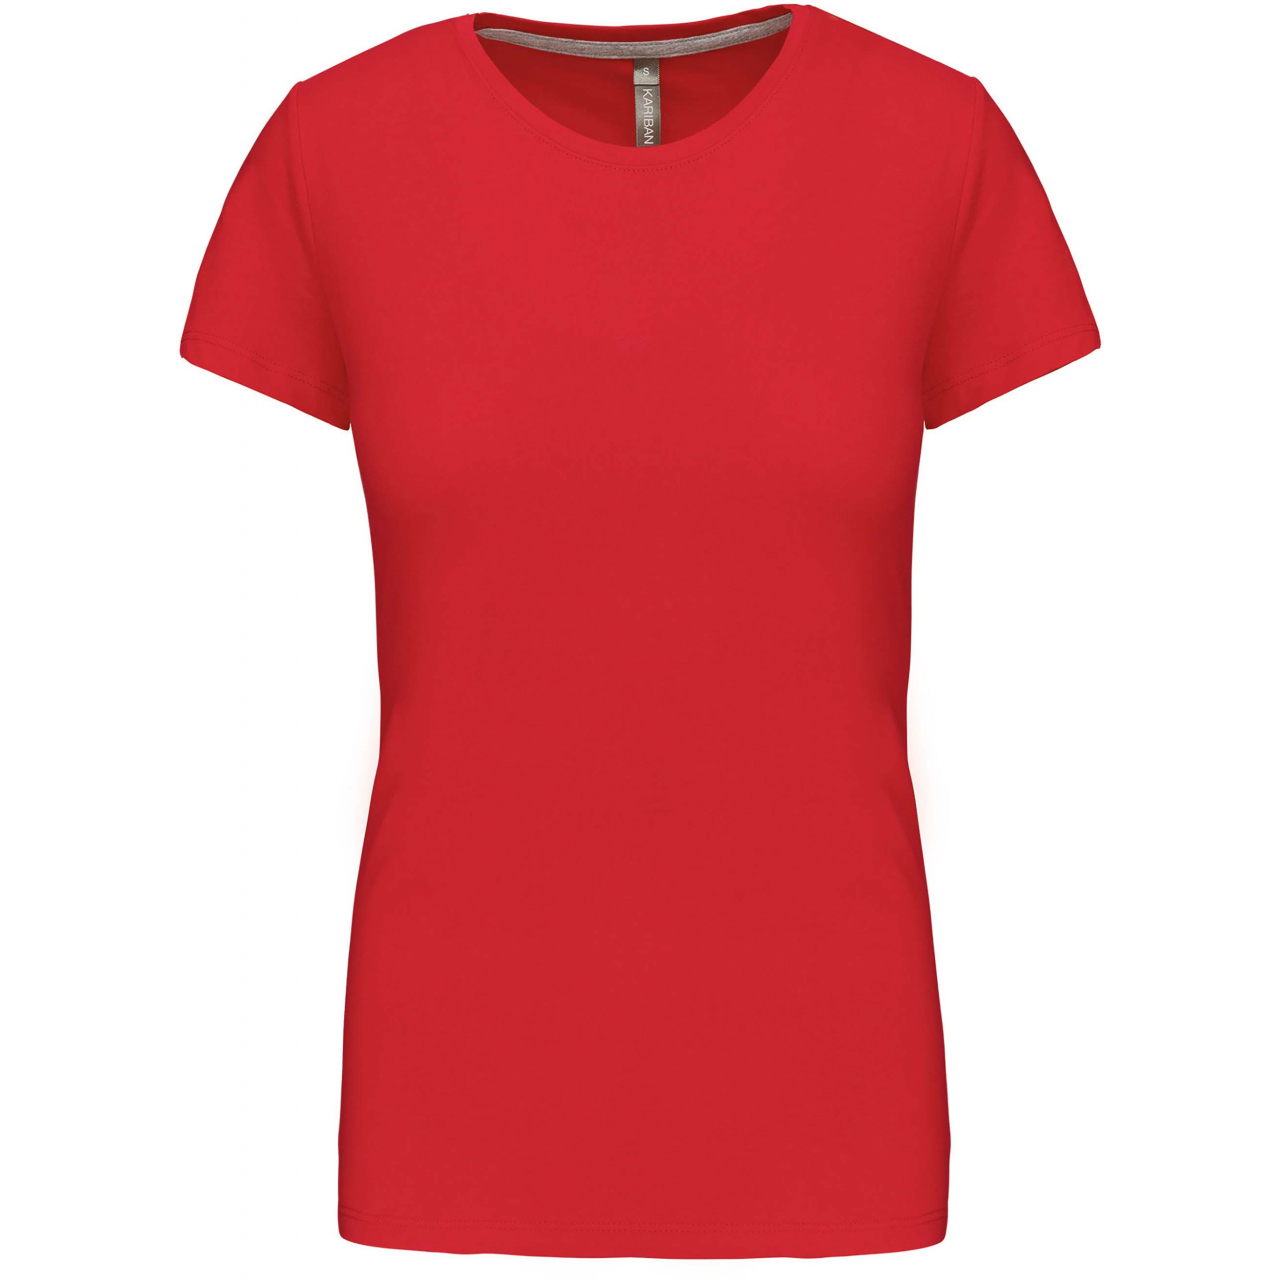 Dámské tričko Kariban s krátkým rukávem - červené, L